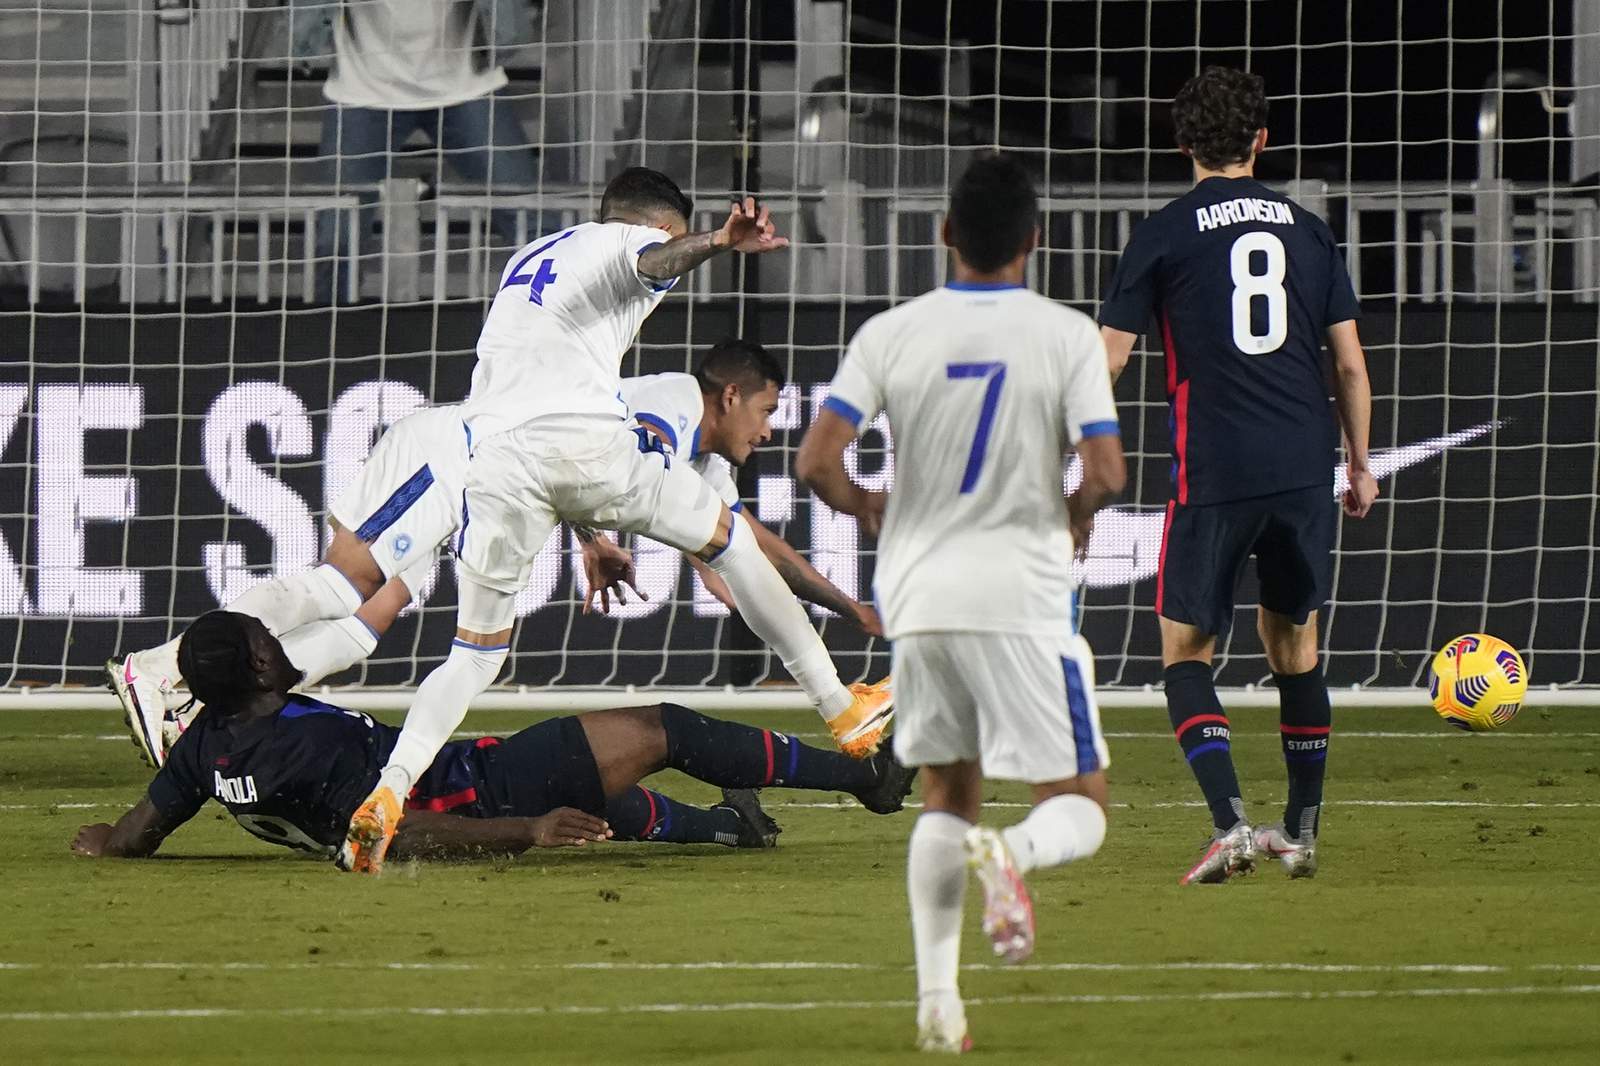 Mueller scores twice, US routs El Salvador 6-0 in exhibition